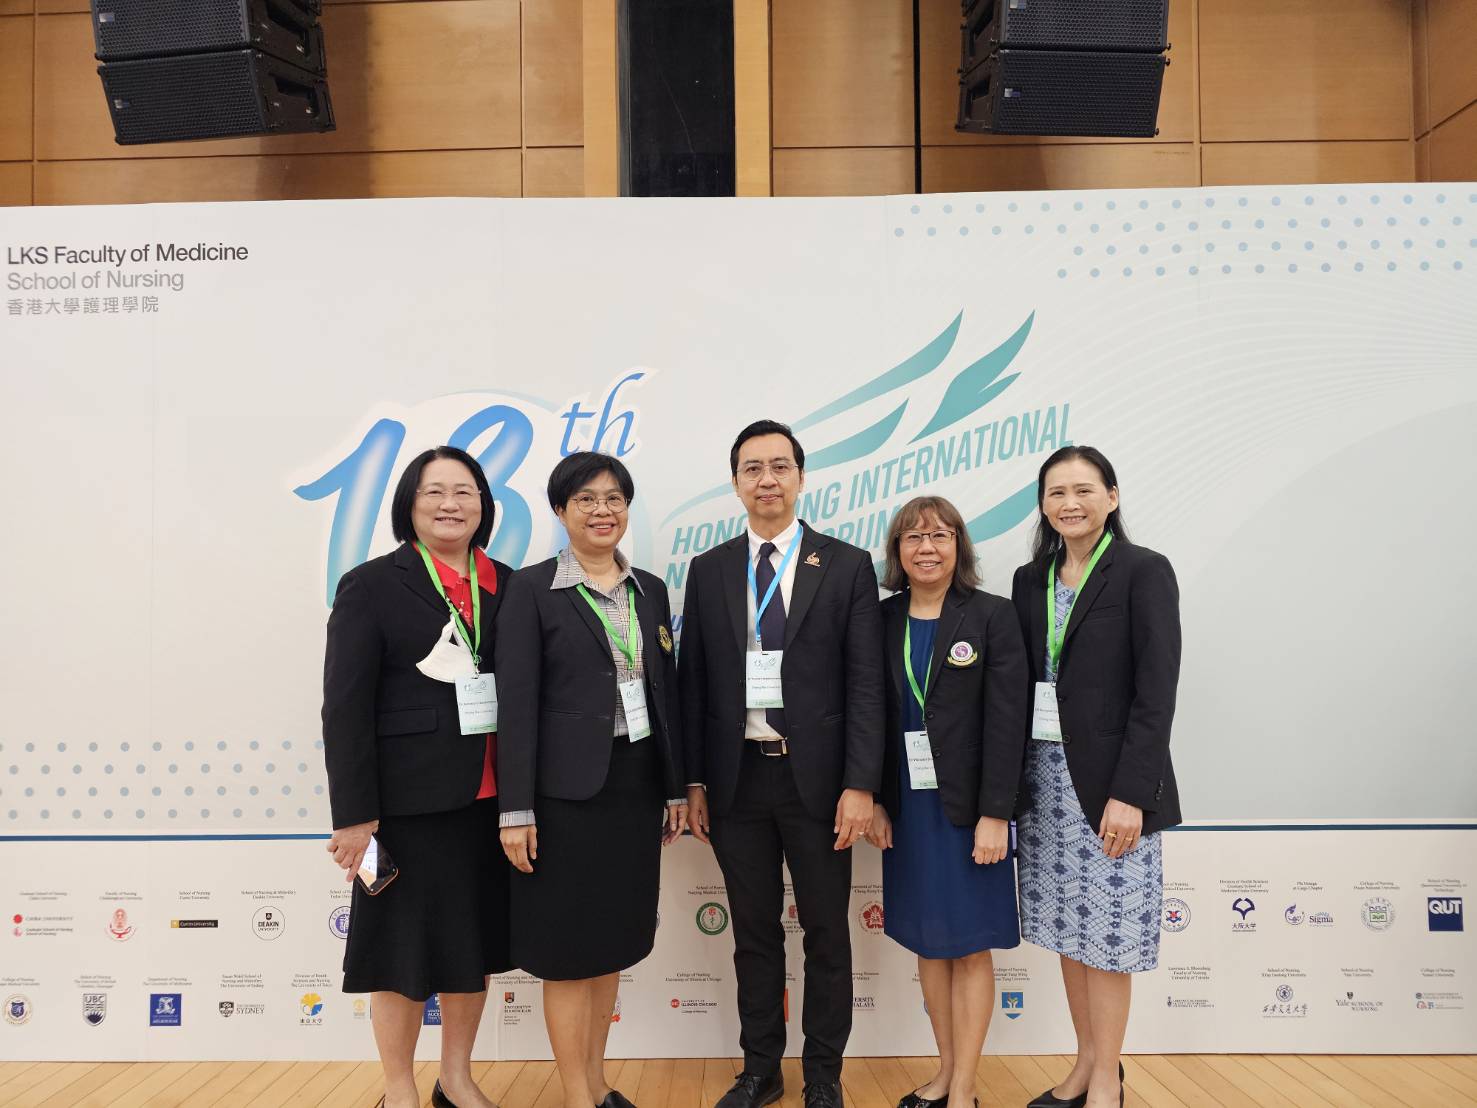 
	คณะผู้บริหารและนักศึกษาระดับบัณฑิตศึกษาร่วมประชุมวิชาการ "The 13th Hong Kong International Nursing Forum"
